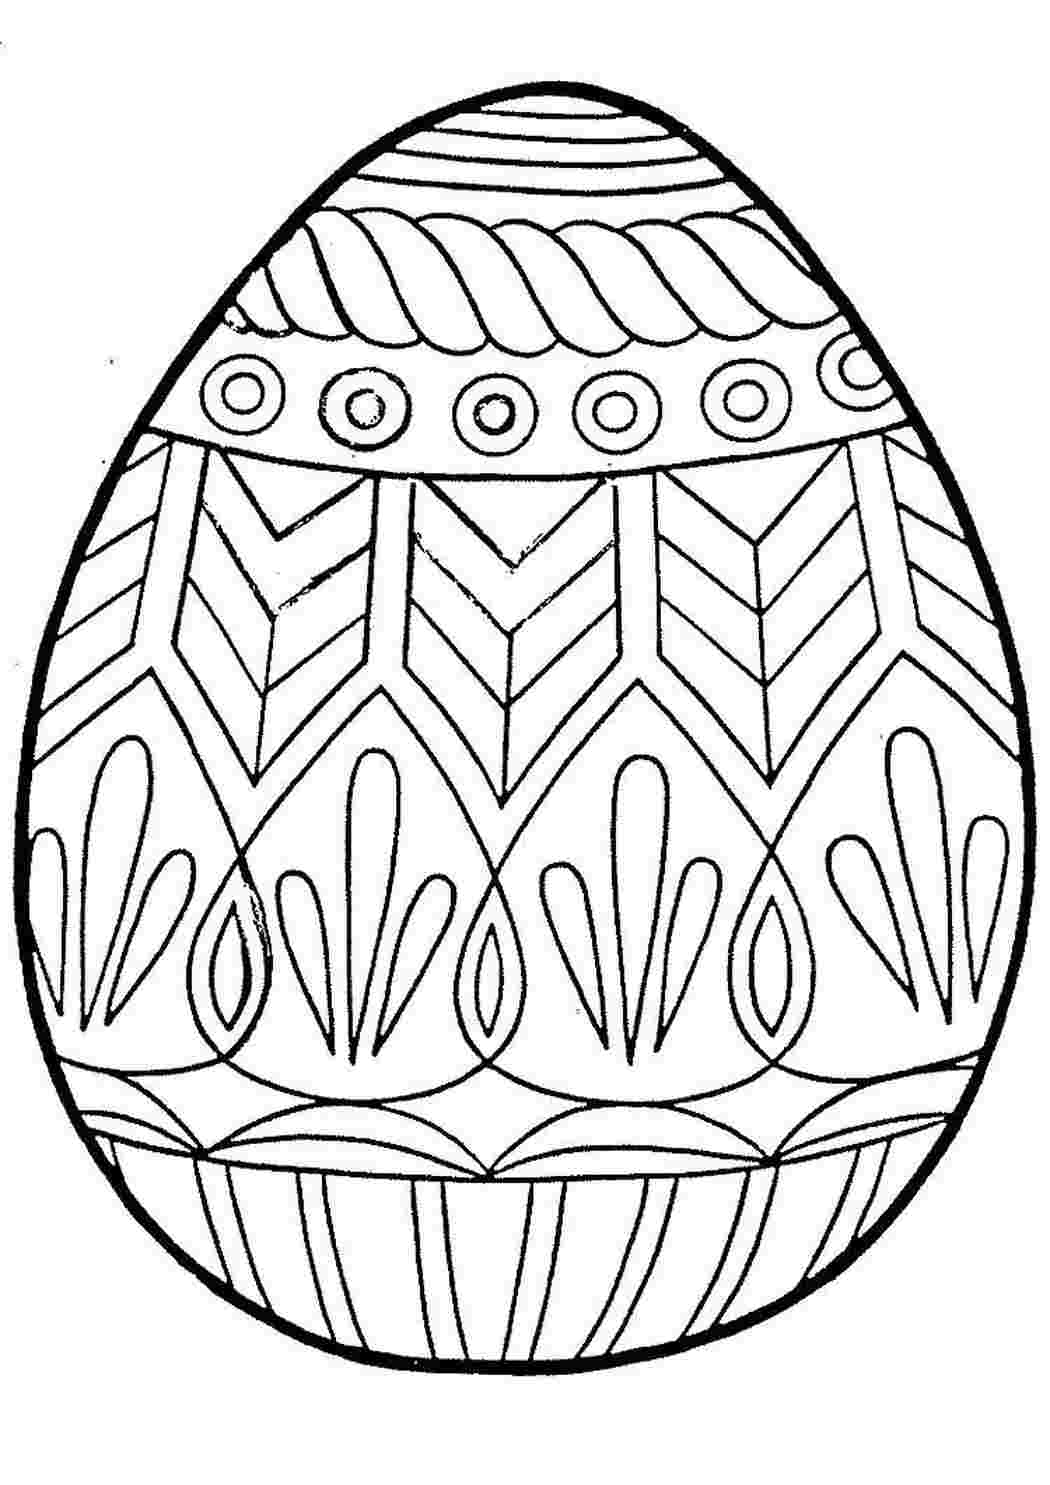 Пасхальное яйцо рисунок для детей. Пасхальное яйцо Писанка рисунок. Пасхальное яйцо разукрашка. Пасхальное яйцо раскраска для детей. Пасхальные яйца для раскрашивания.